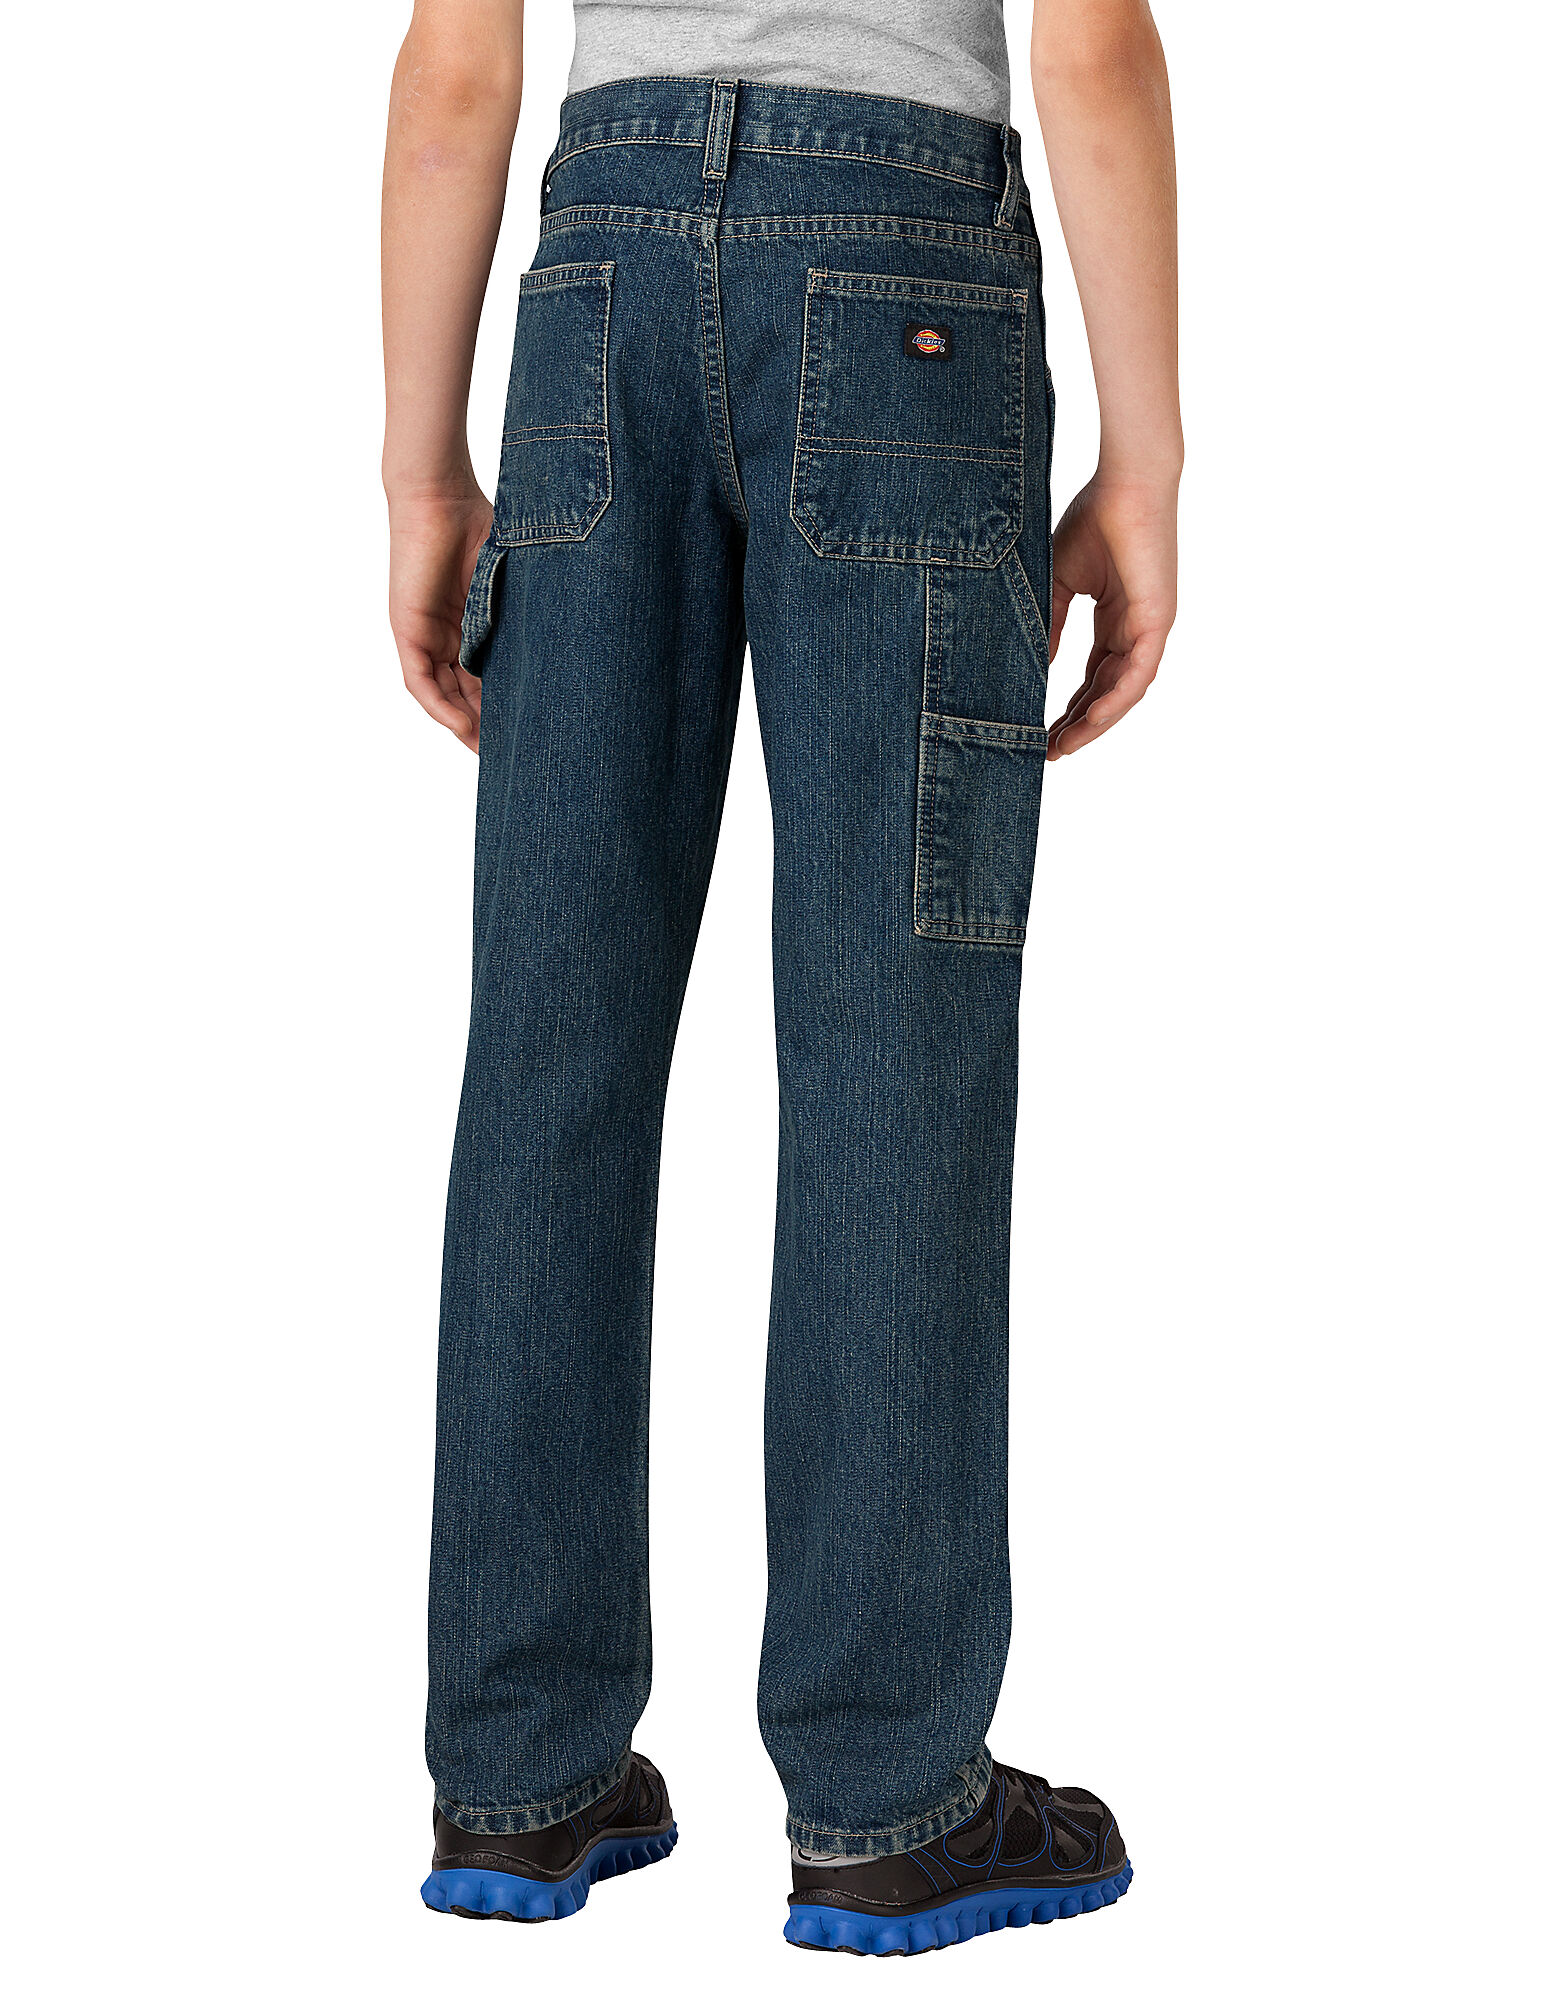 husky jeans short length